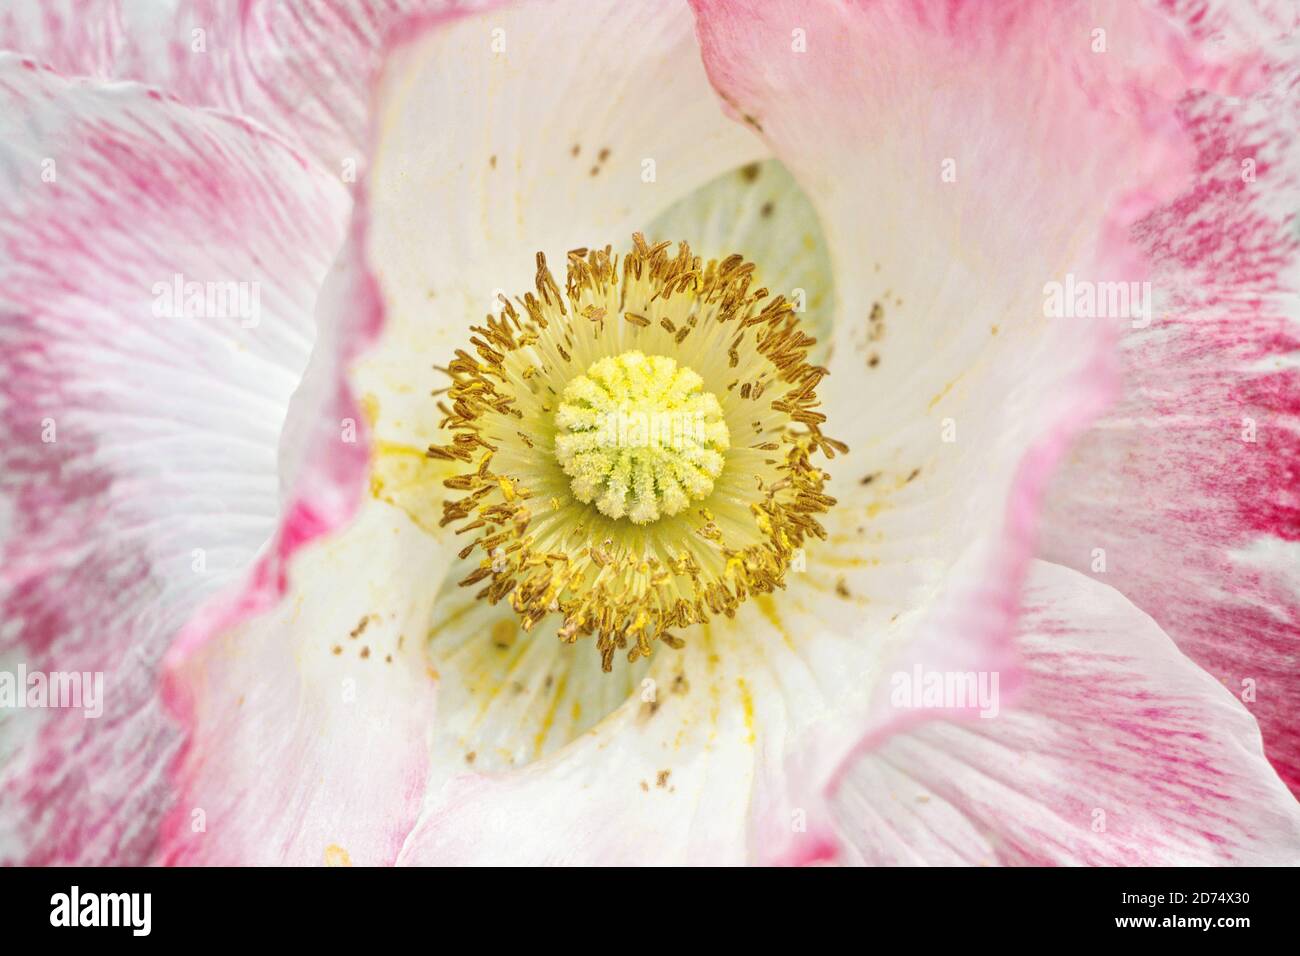 primo piano di fiore di papavero rosa fiorito con stampa gialla Foto Stock